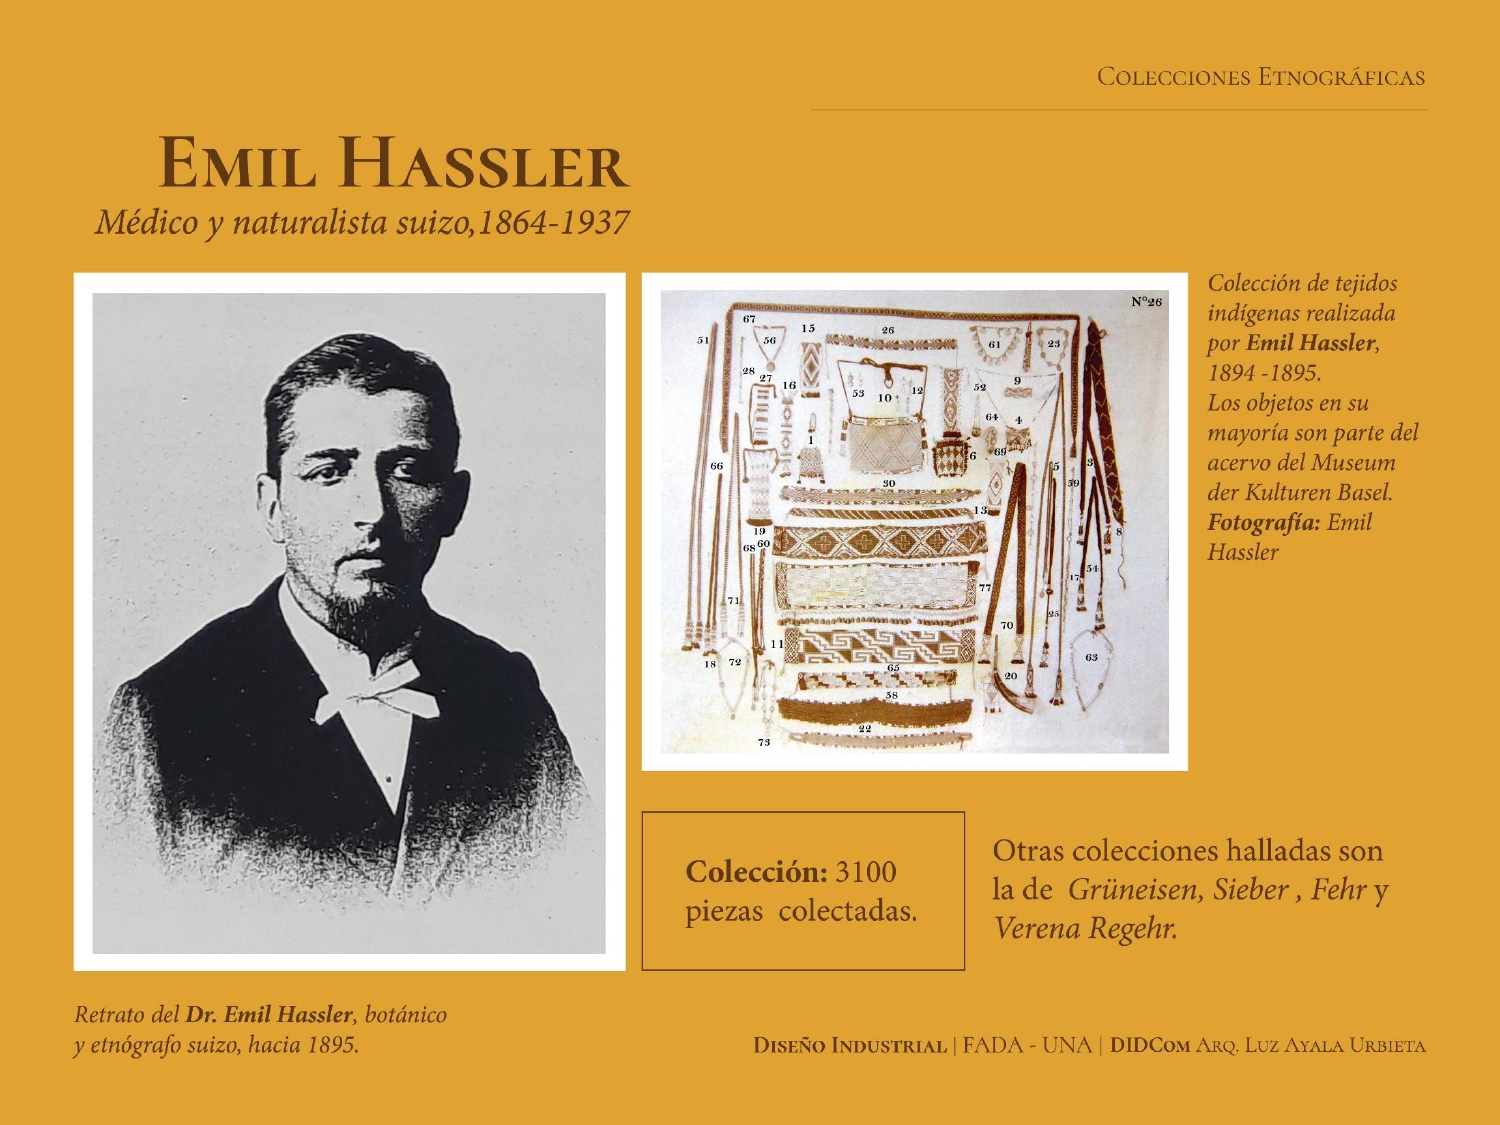 Diapositiva sobre la investigación acerca del acervo de Emilio Hassler